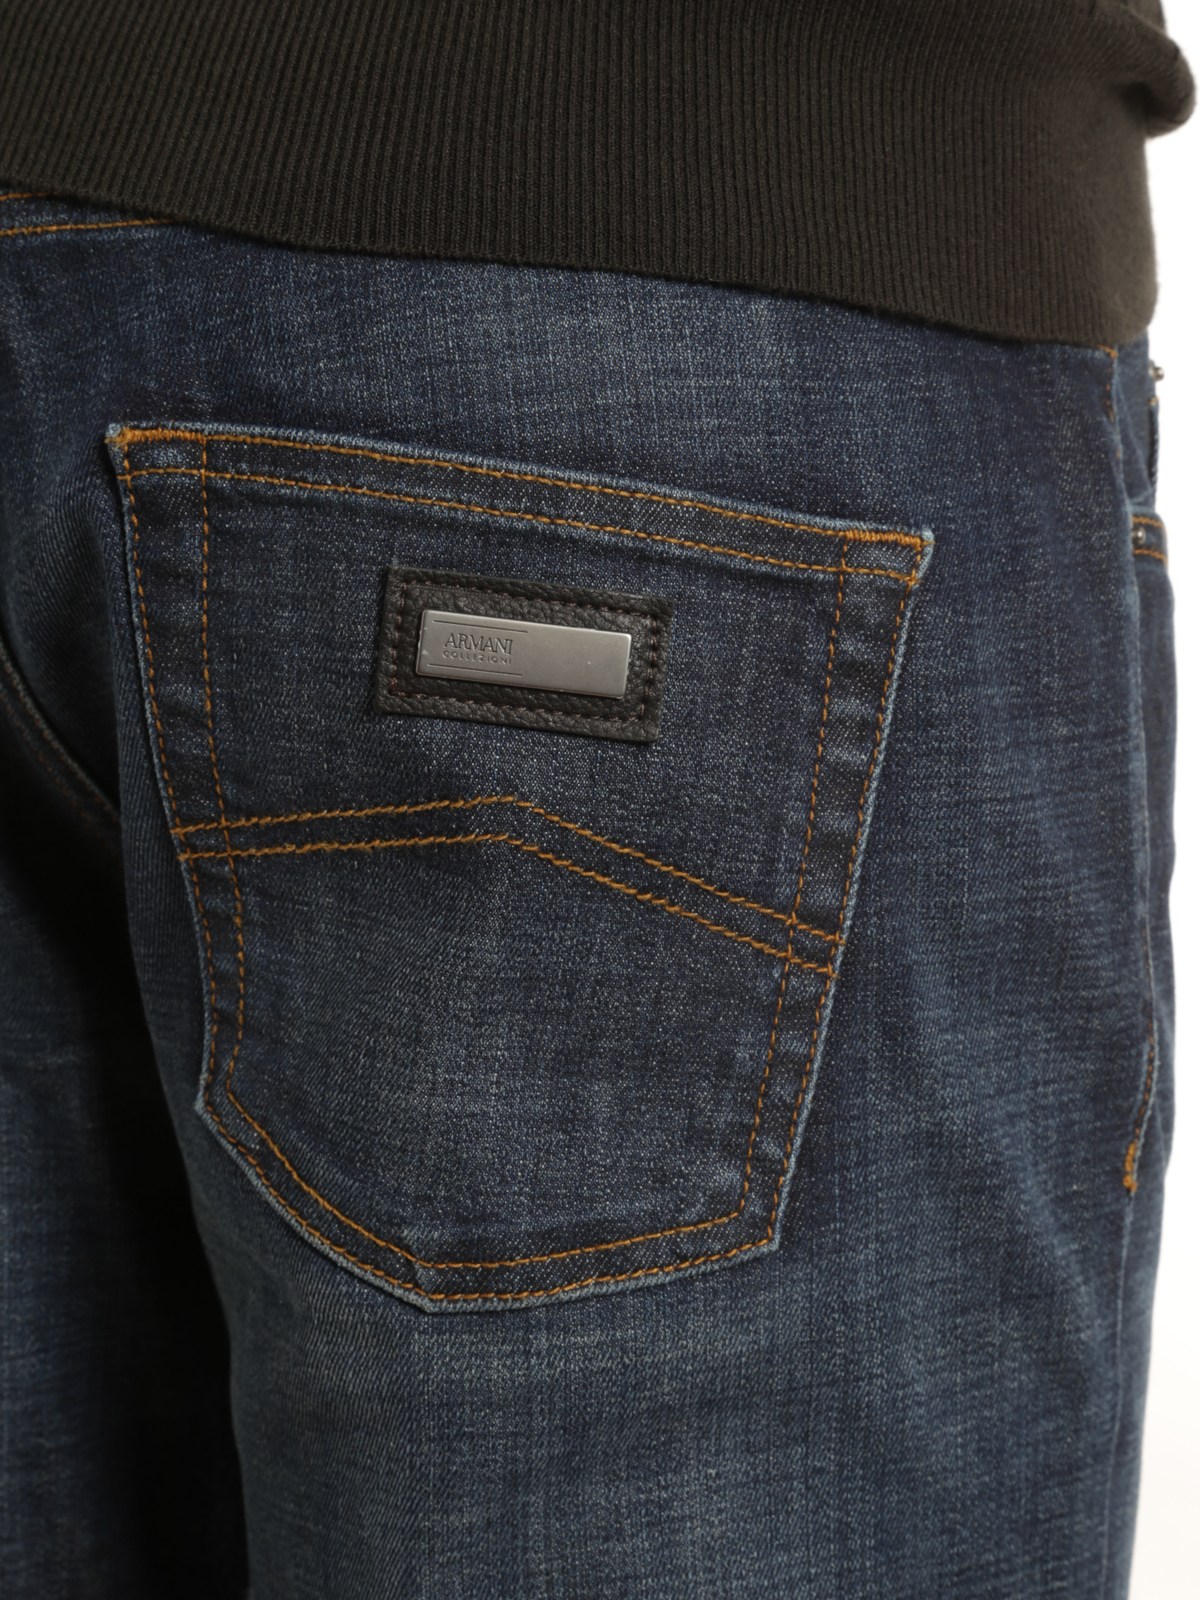 audit Gehoorzaamheid Datum Straight leg jeans Armani Collezioni - J15 Jeans - BIJ155A15 | iKRIX.com